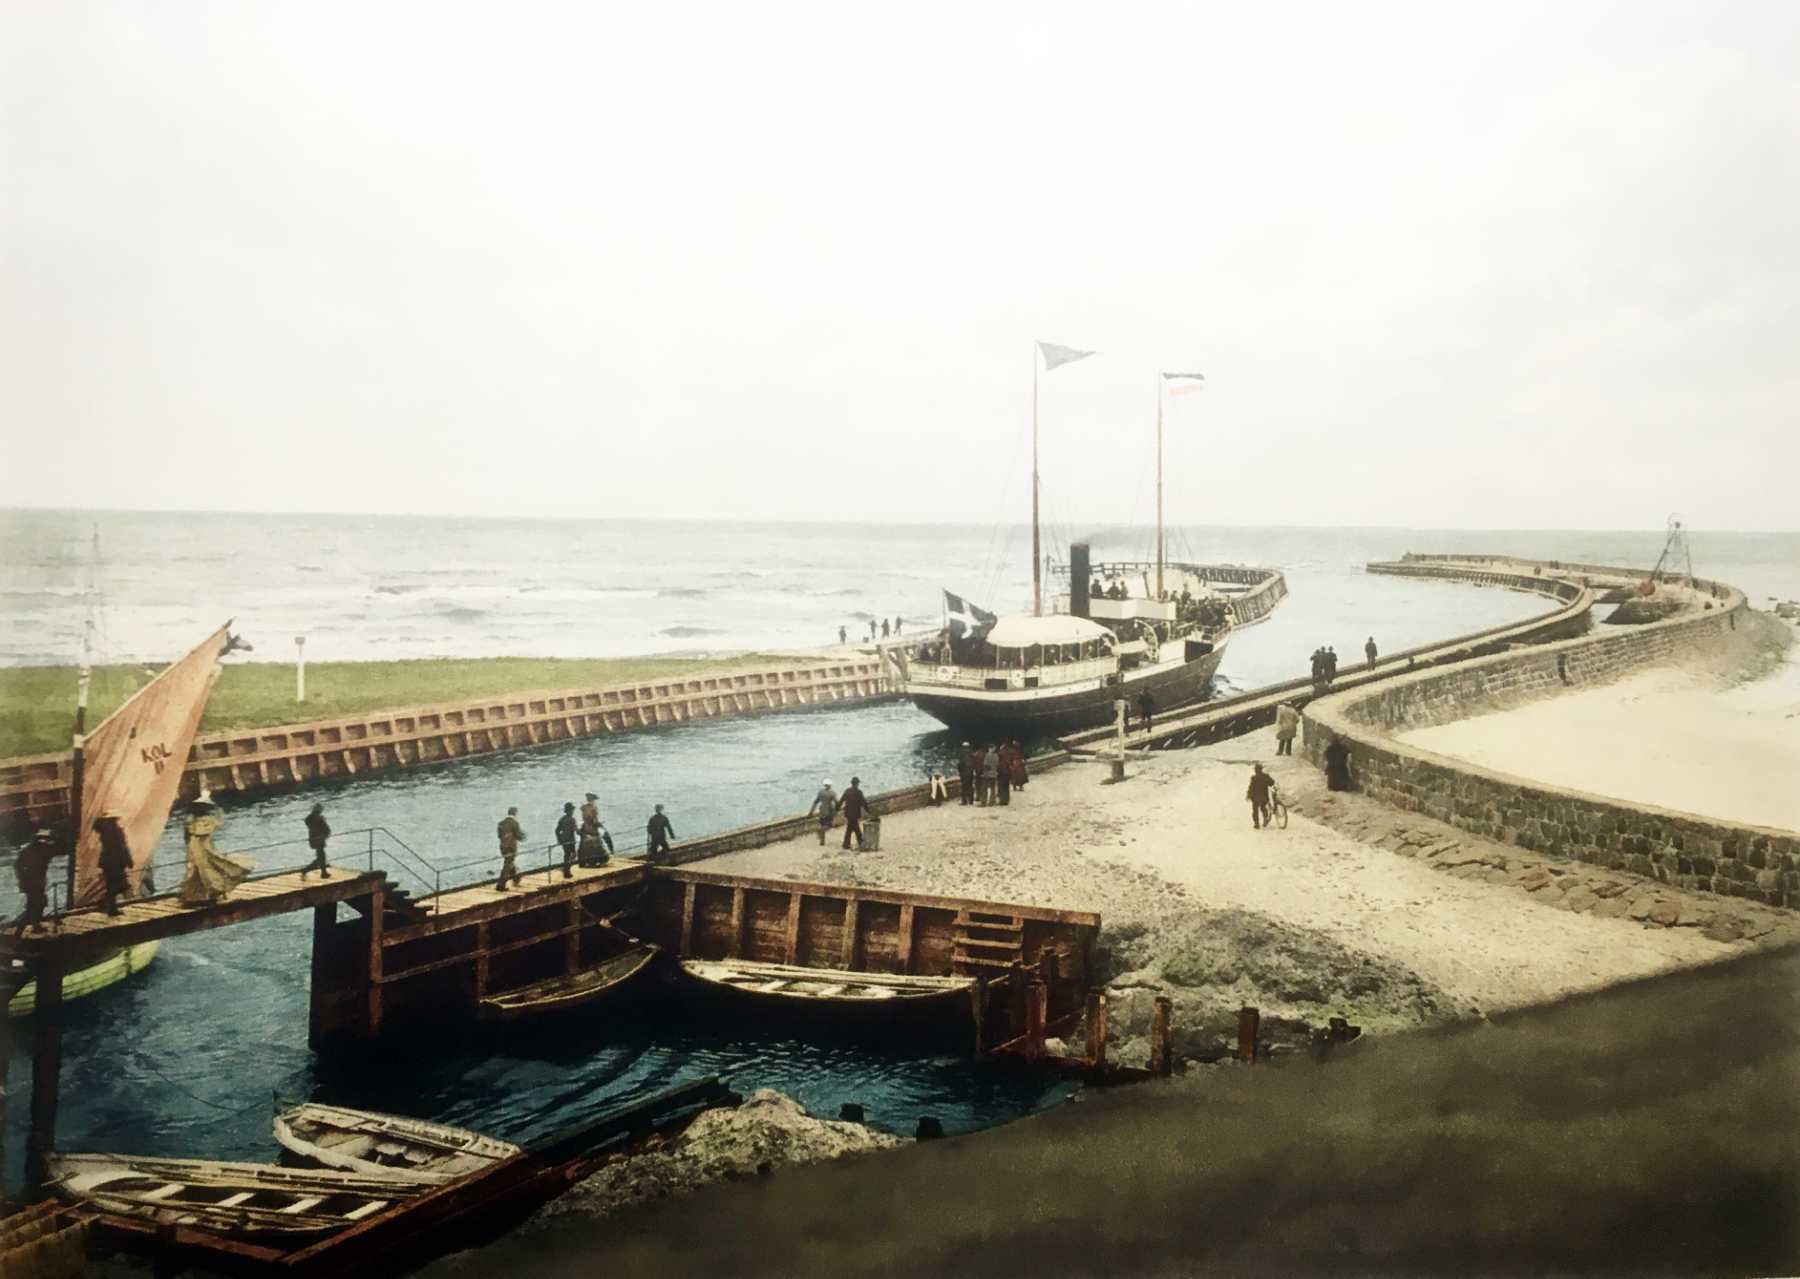 Hafen Kolberg um 1900. Quelle: ETHZ, Deutschland um 1900